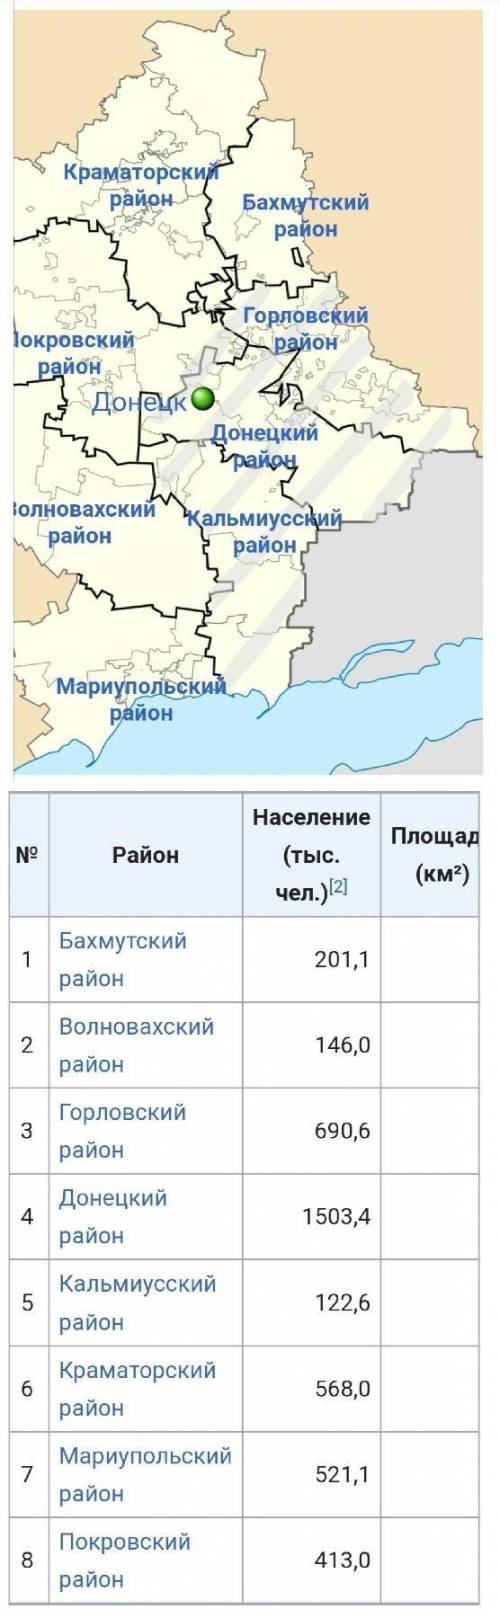 Назовите административные районы и крупные города Донецкого региона.​